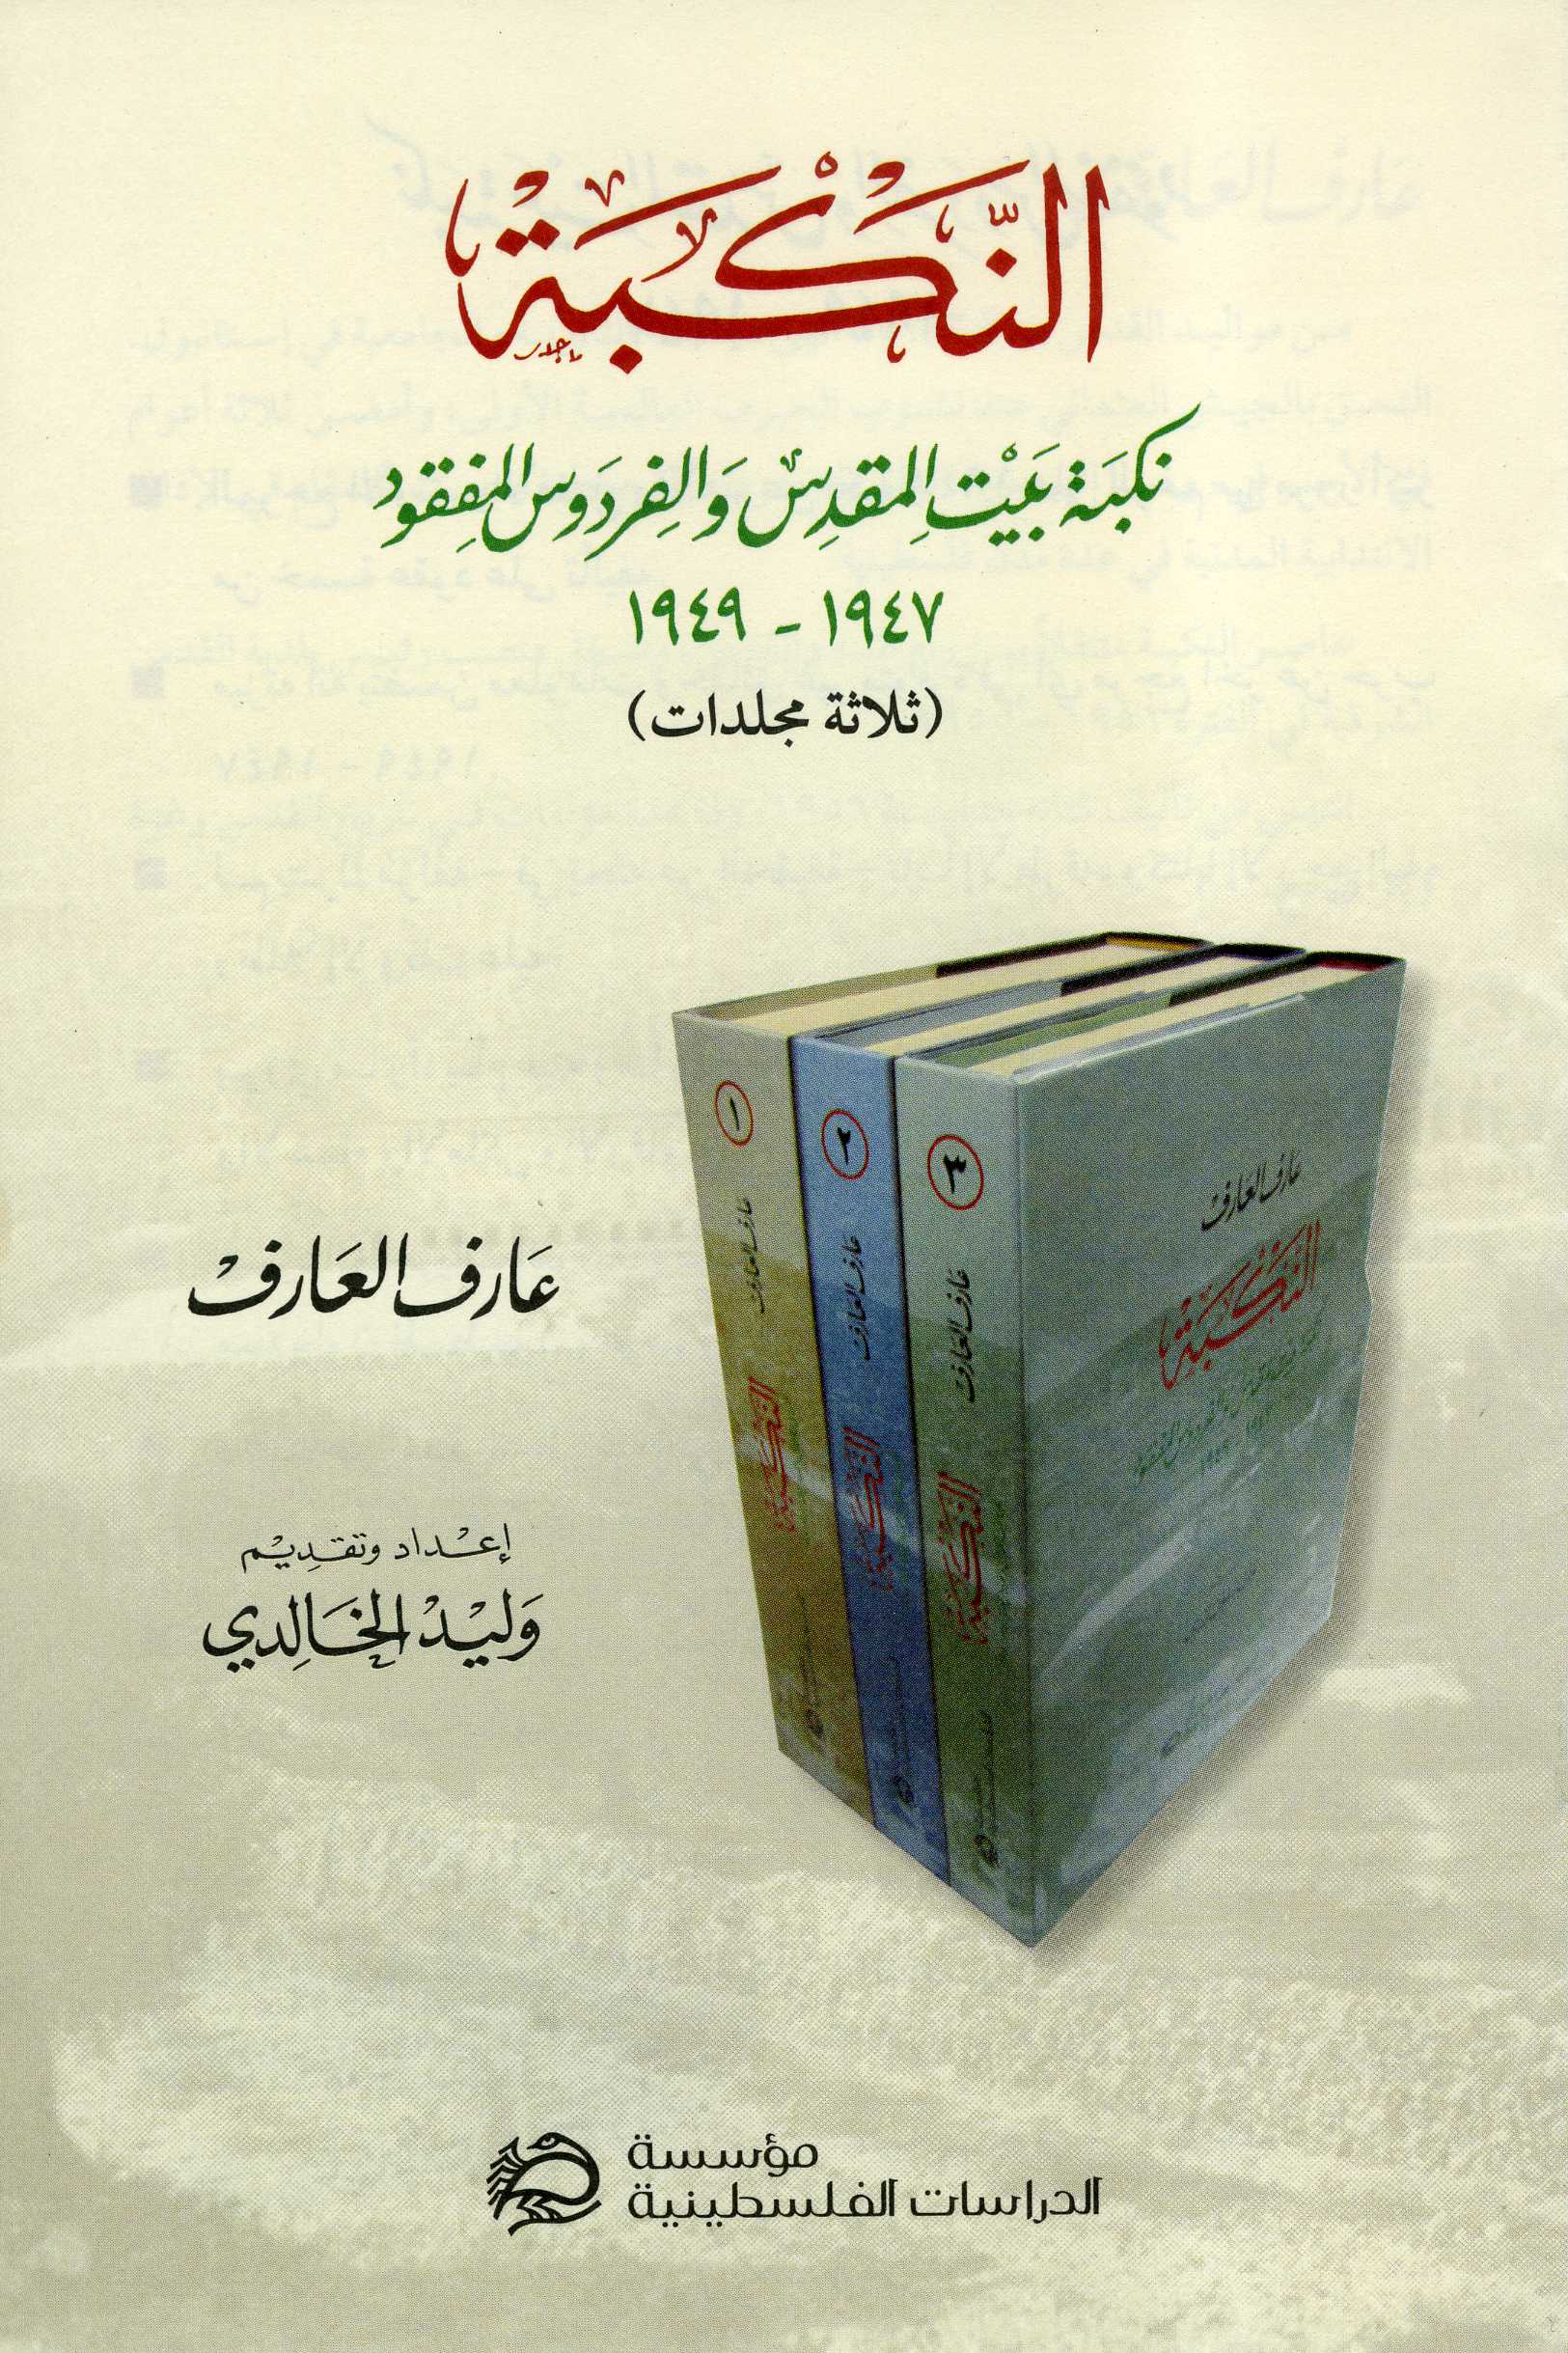 النكبة: نكبة بيت المقدس والفردوس المفقود، 1947 – 1949 (ثلاثة مجلدات داخل علبة)